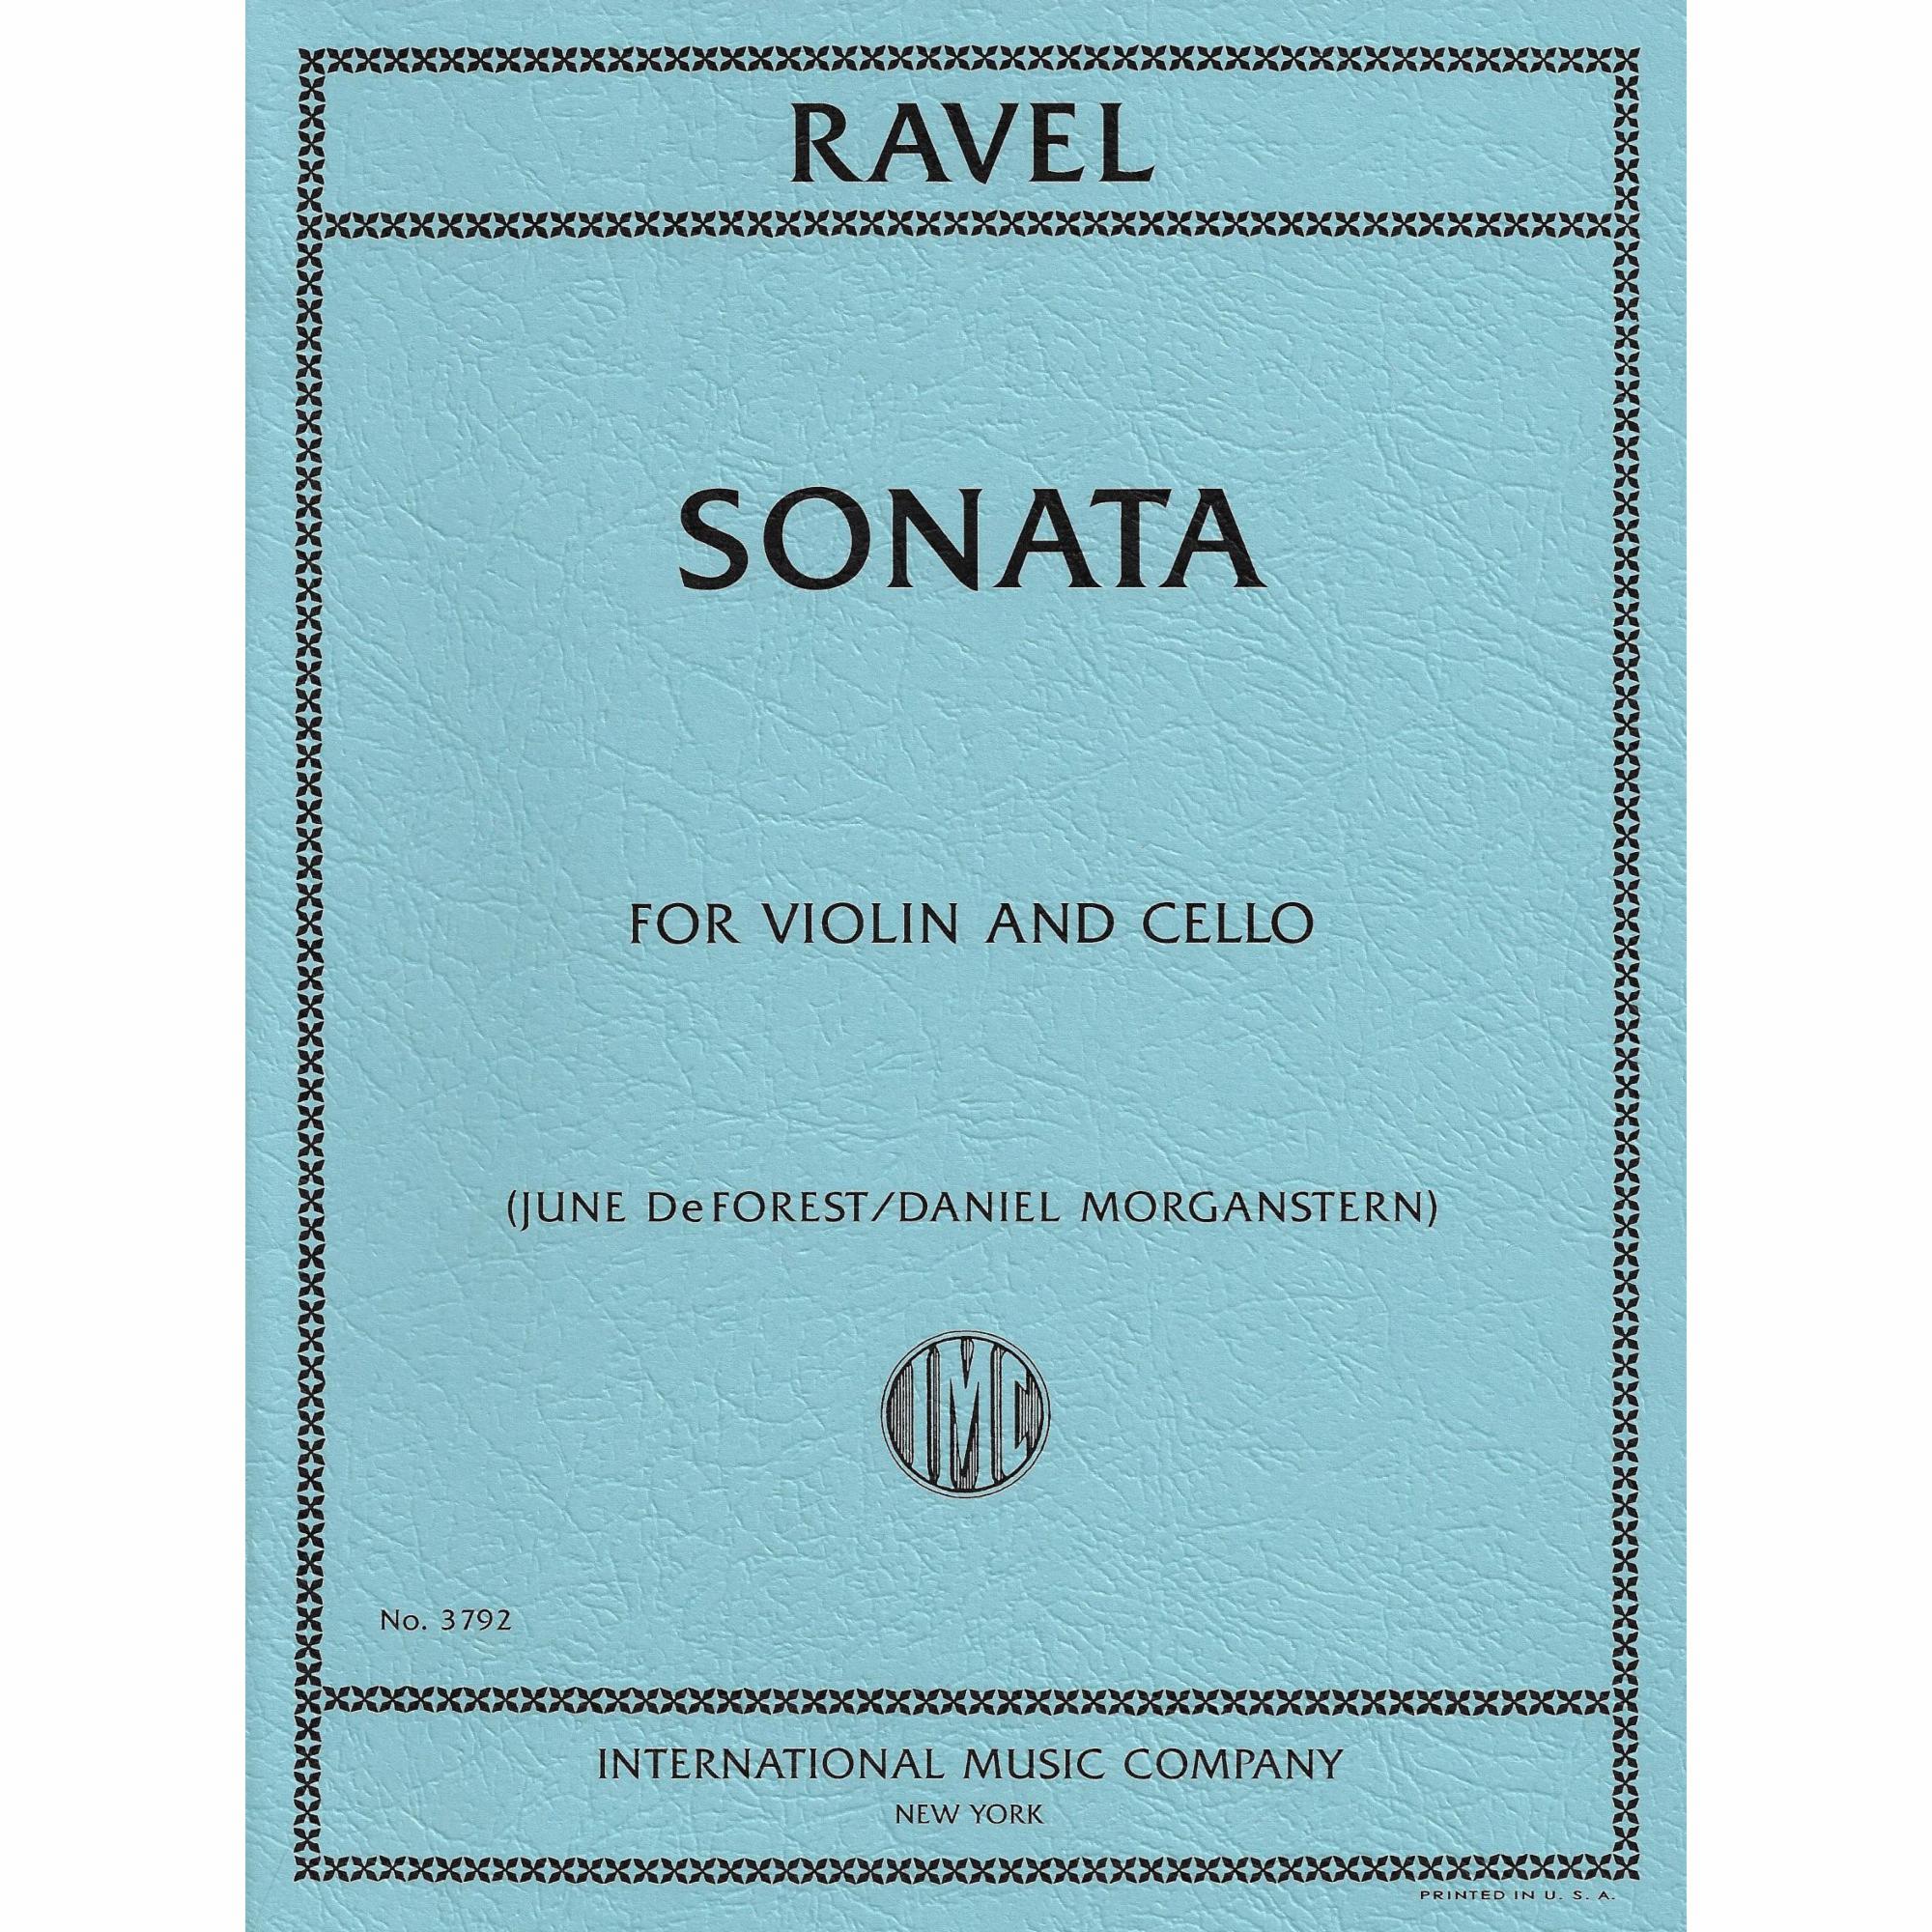 Ravel -- Sonata for Violin and Cello